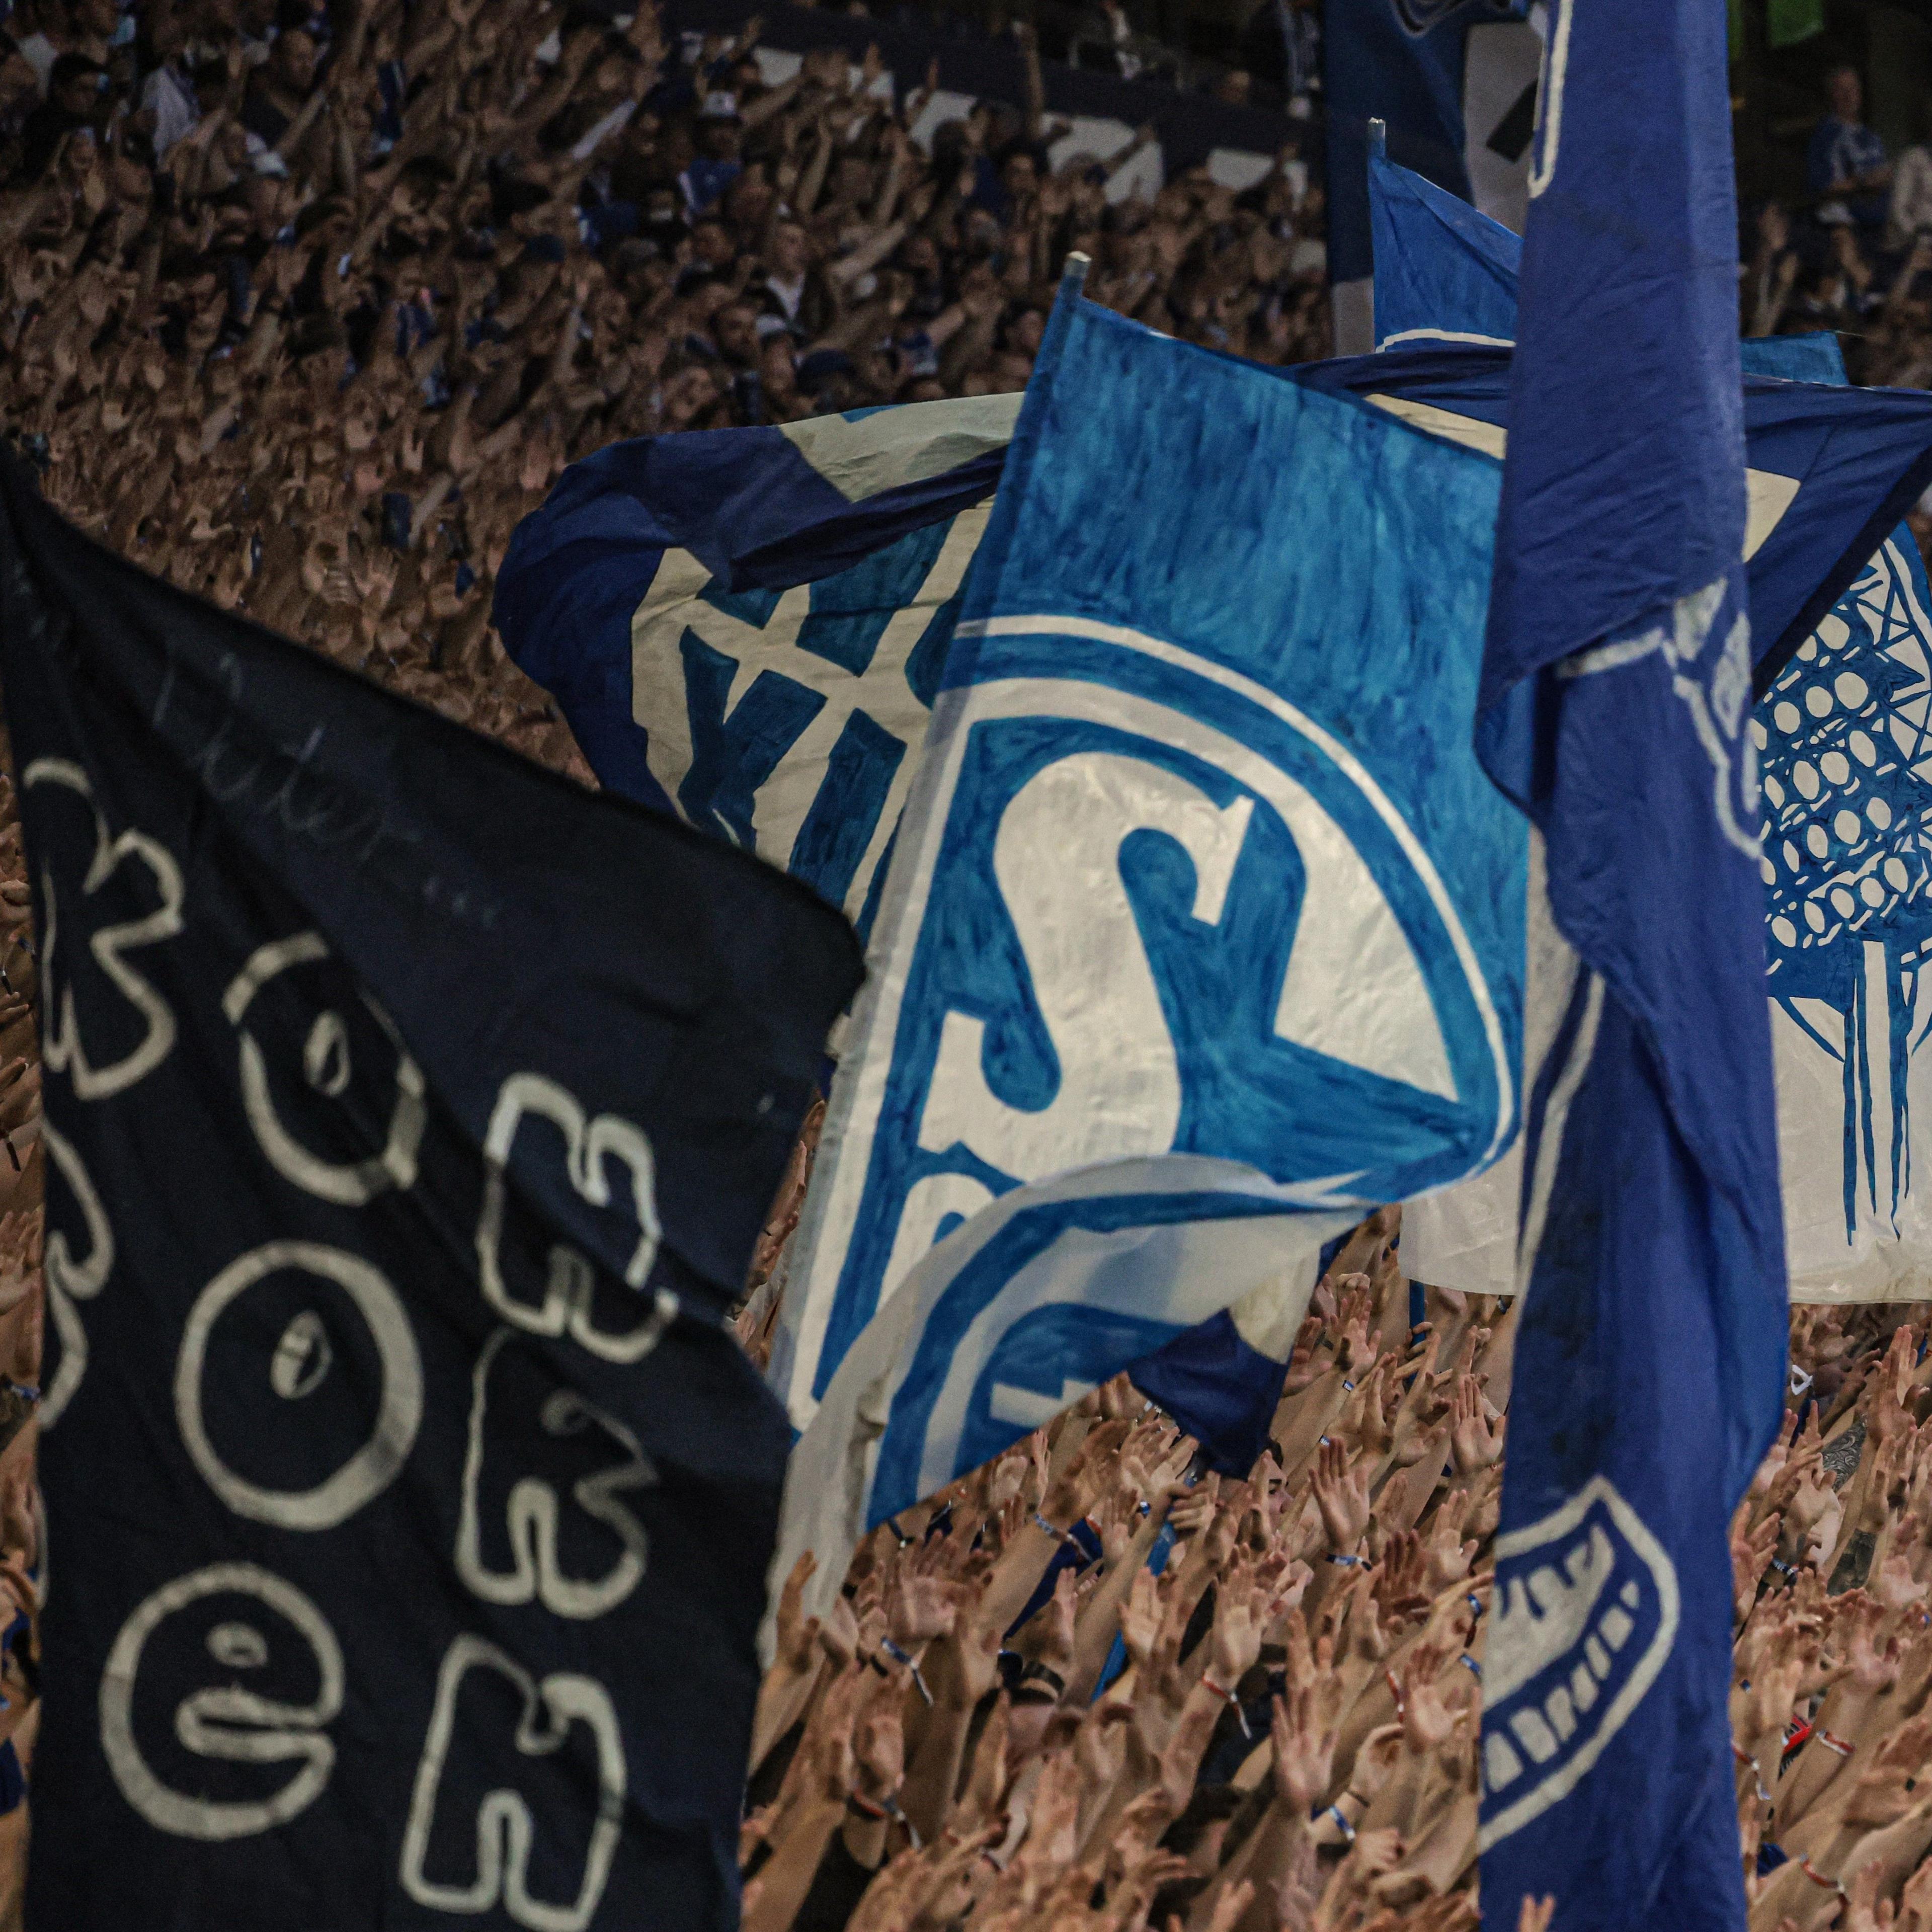 Schalke fans support the team